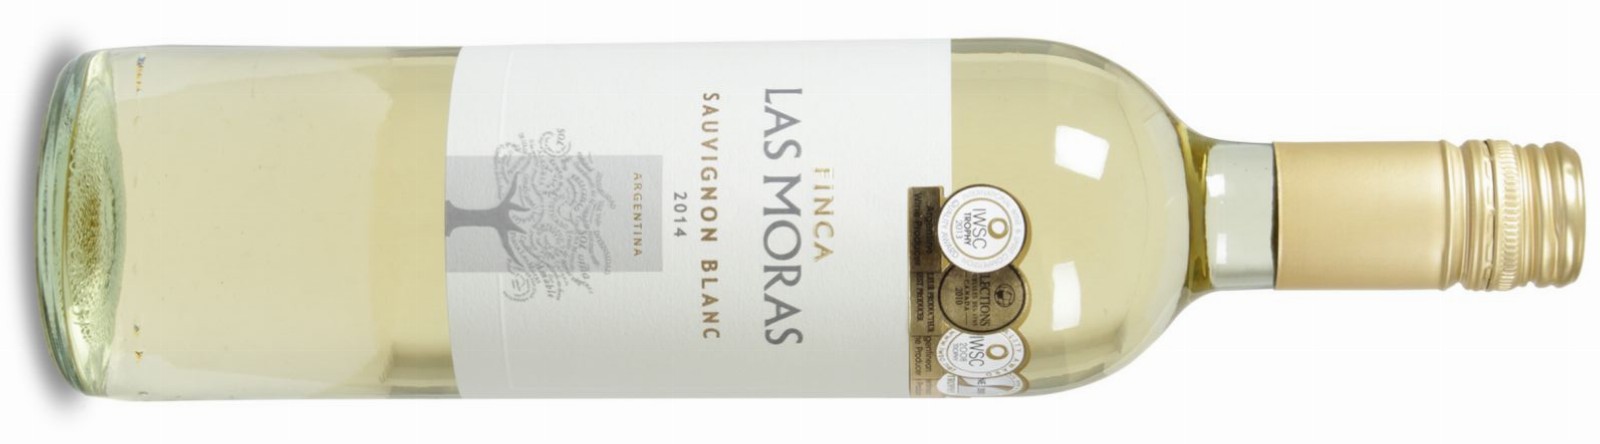 Las Moras Sauvignon Blanc 2014